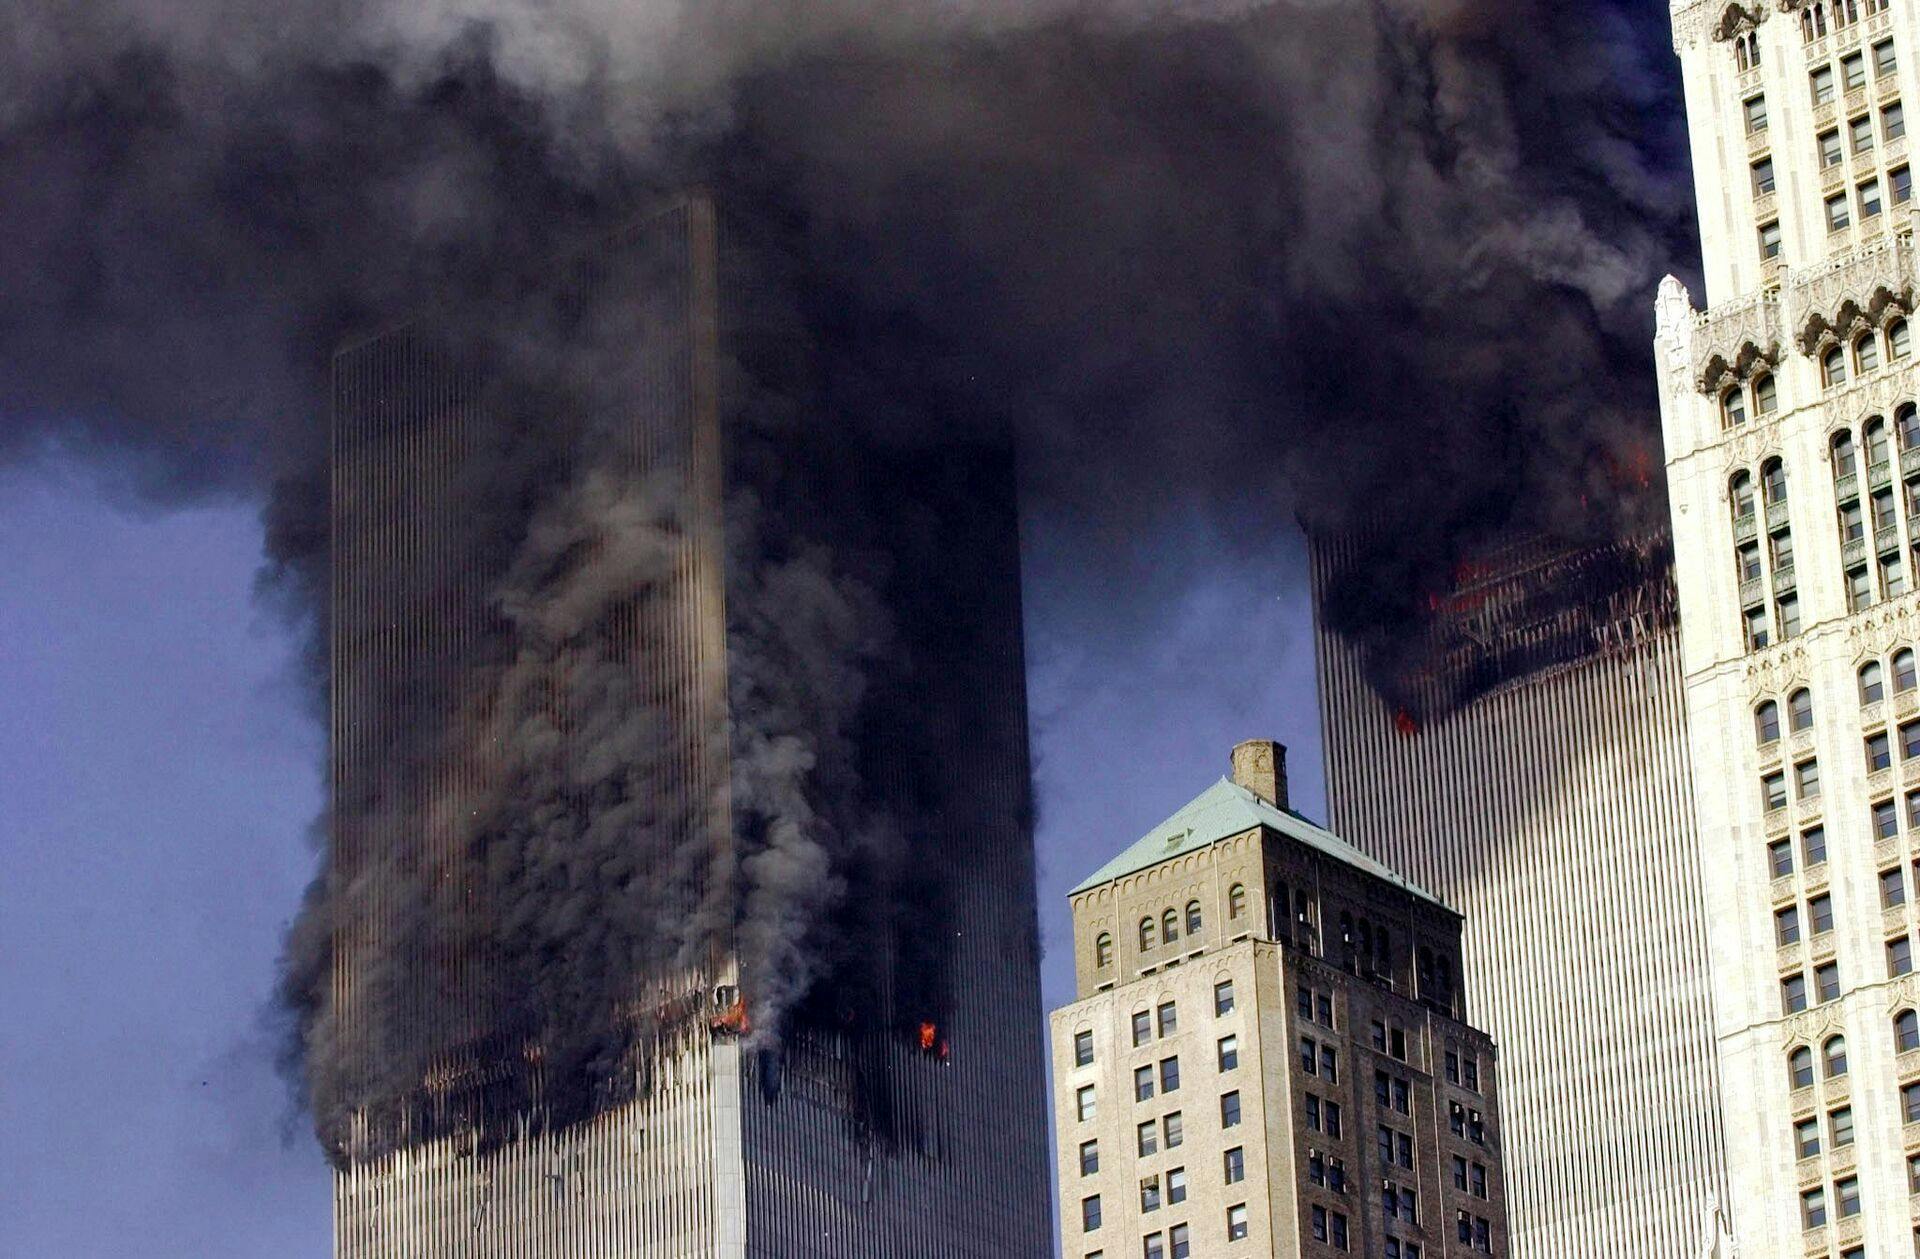 De to fly er fløjet ind i hvert sit tvillingetårn og sort røg vælter ud fra bygningerne.
